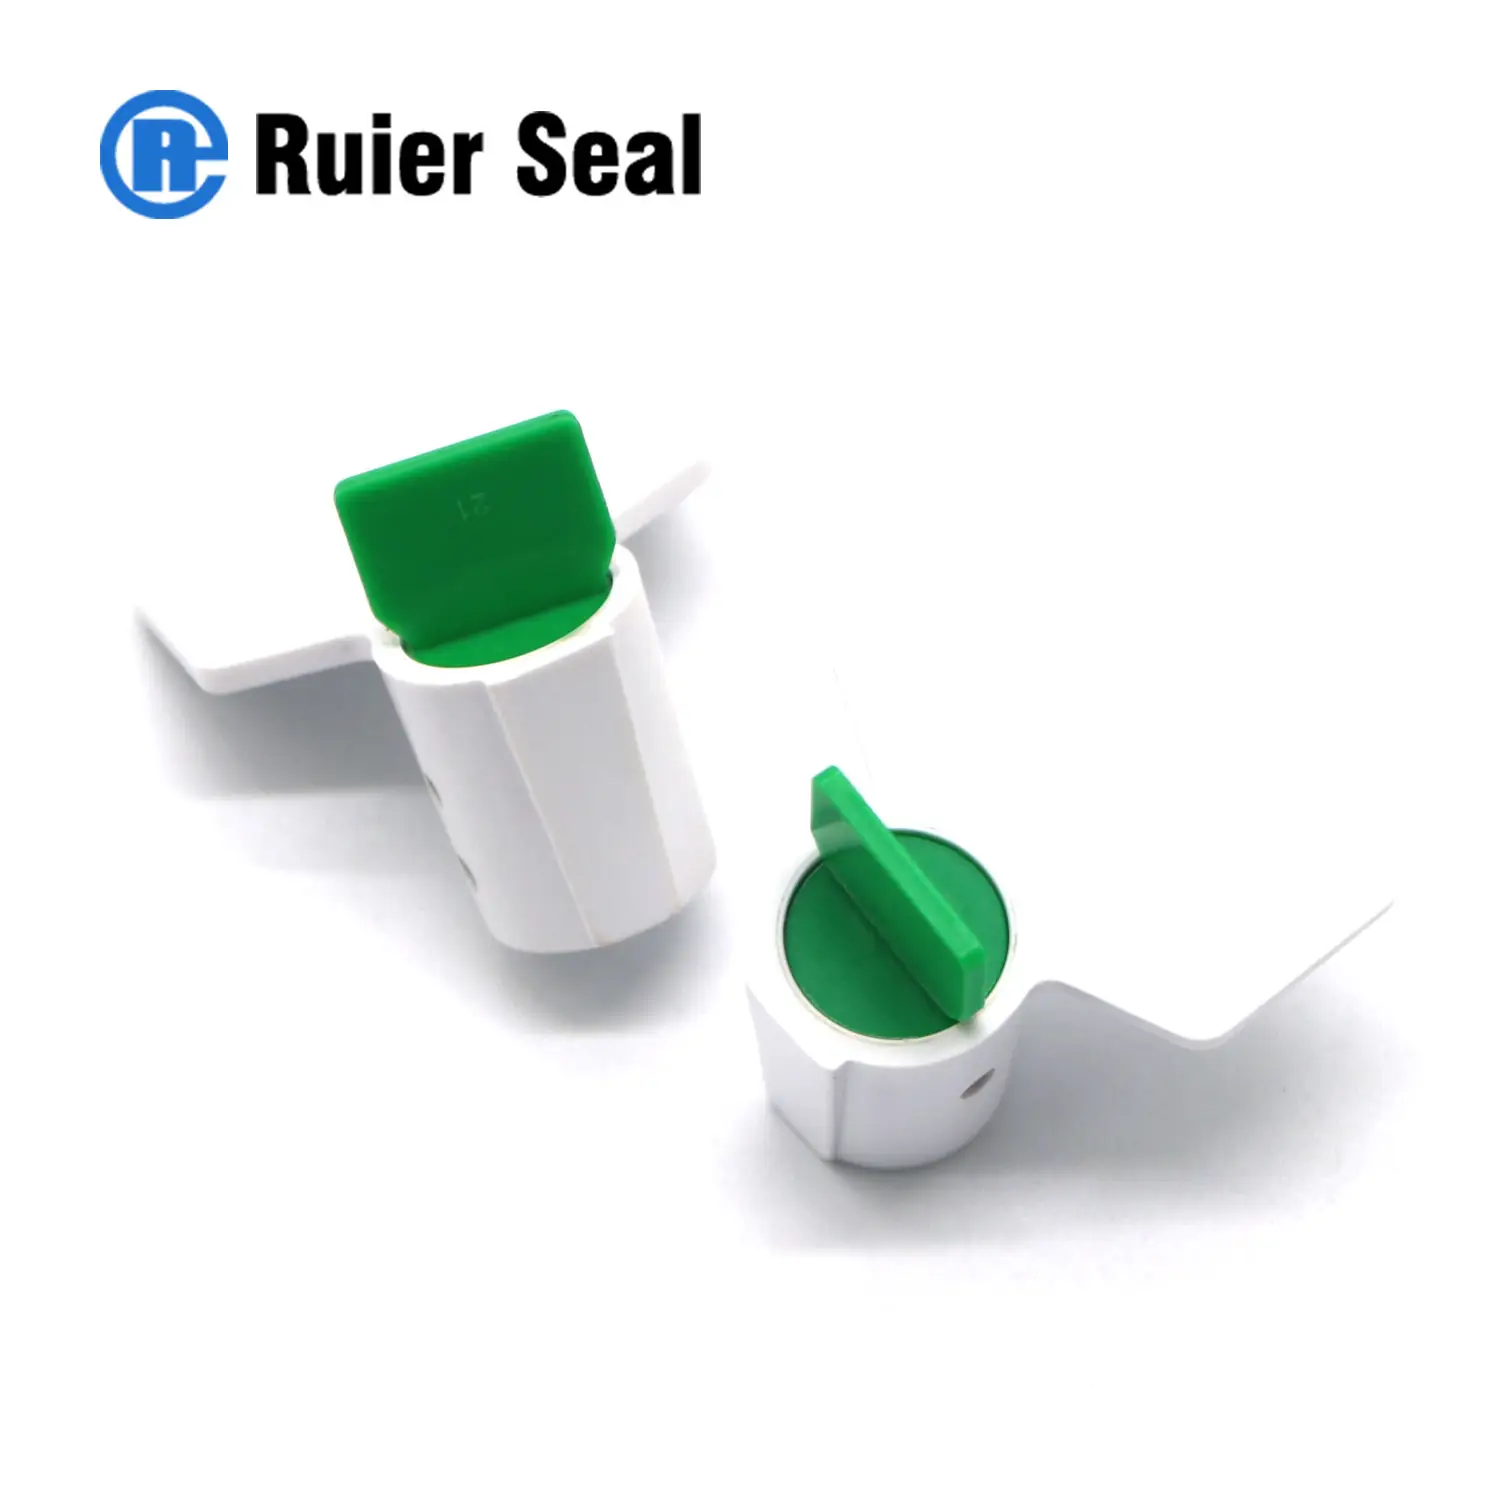 REM107 sale twist meter seal gas water electricity meter seal plastic material meter seal